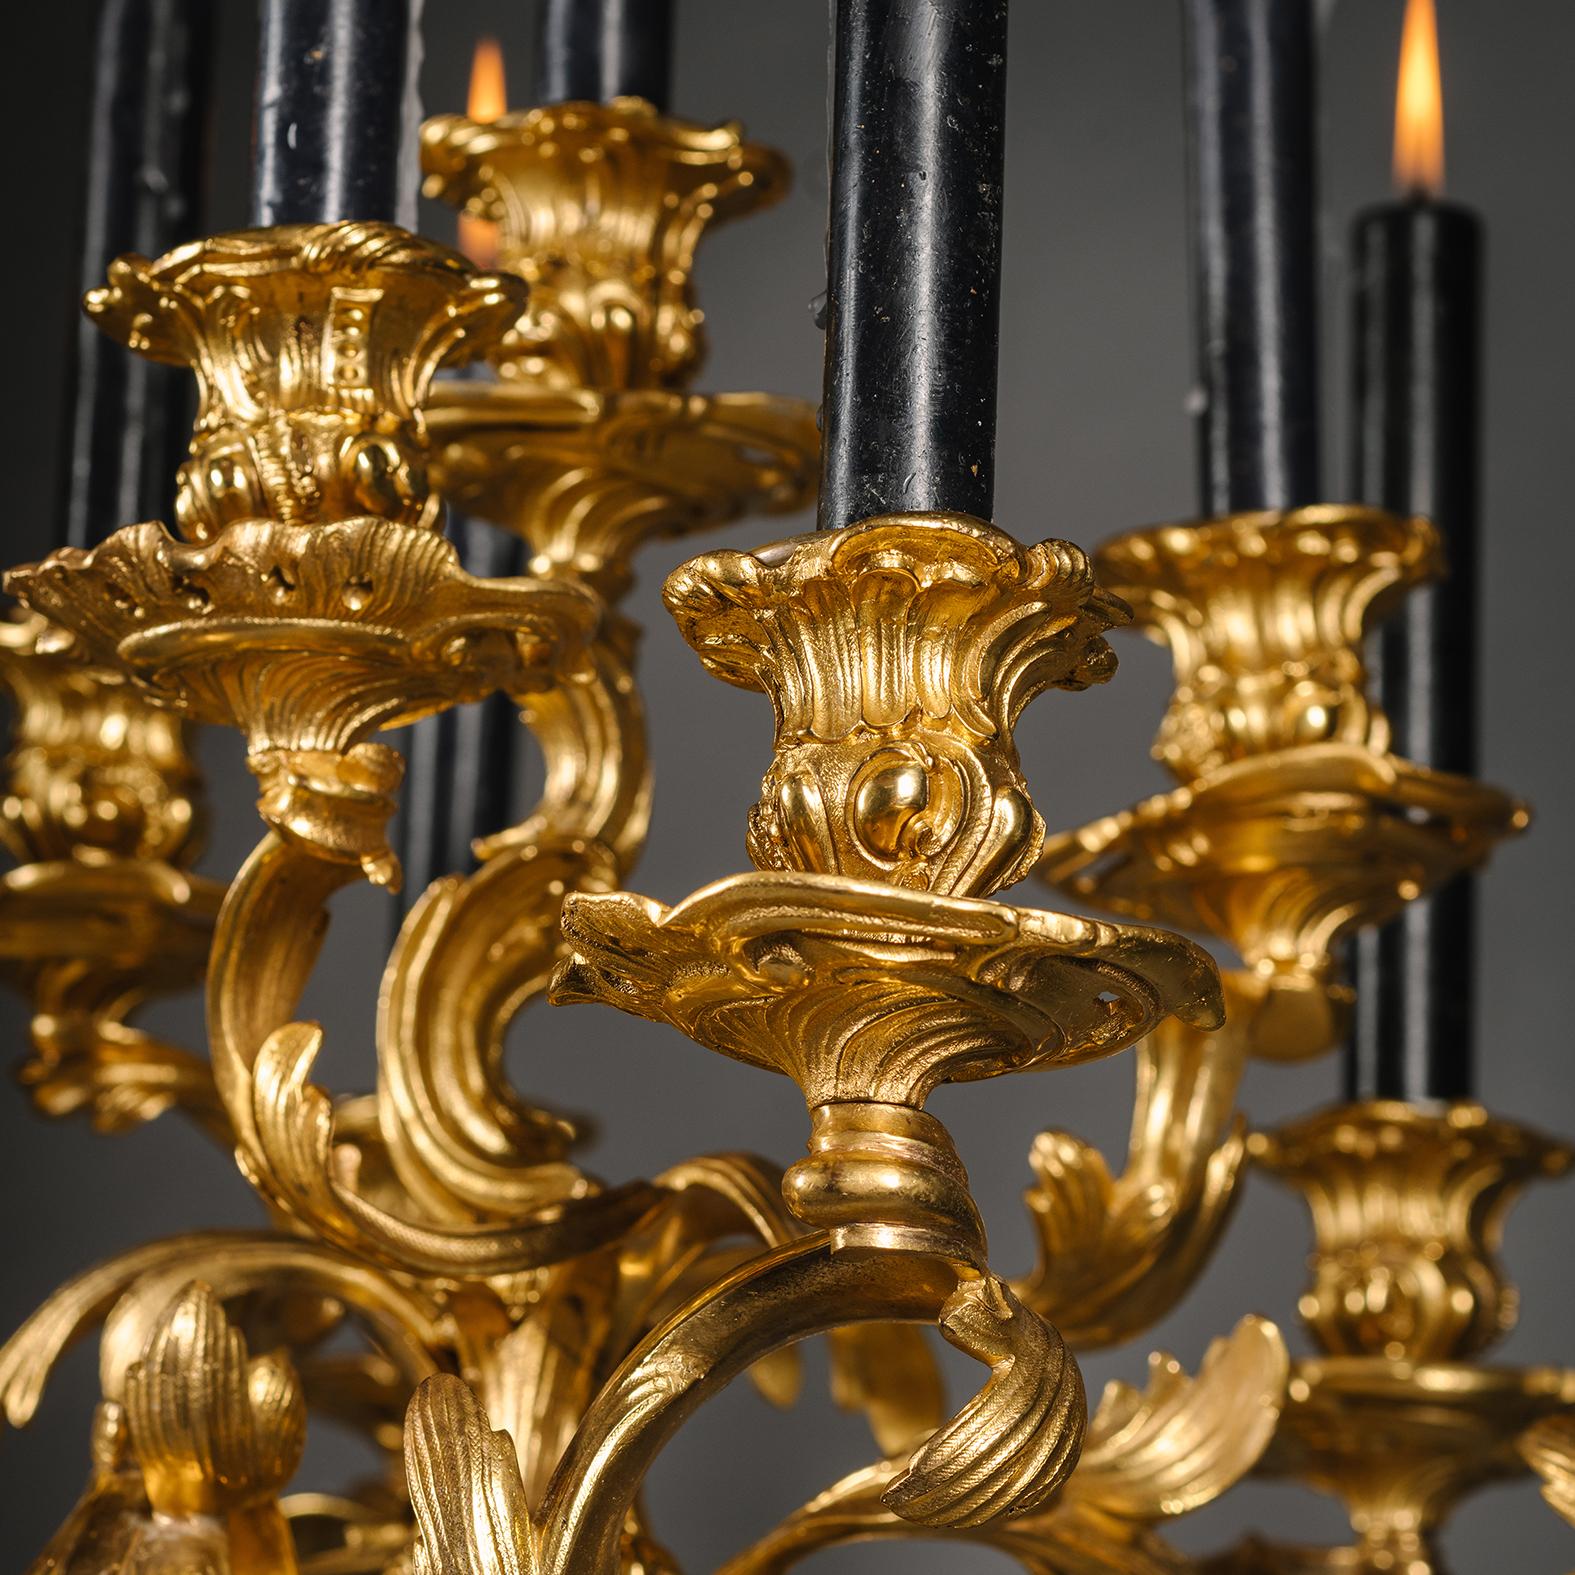 Ein Paar große Napoleon-III-Kronleuchter aus vergoldeter Bronze mit neun Lichtern, die die Jagd symbolisieren. 

Jedes Stück ist im Stil Ludwigs XV. konzipiert und hat einen Rocaille-Stiel, der assymetrisch modellierte, gerollte Branches trägt. Der